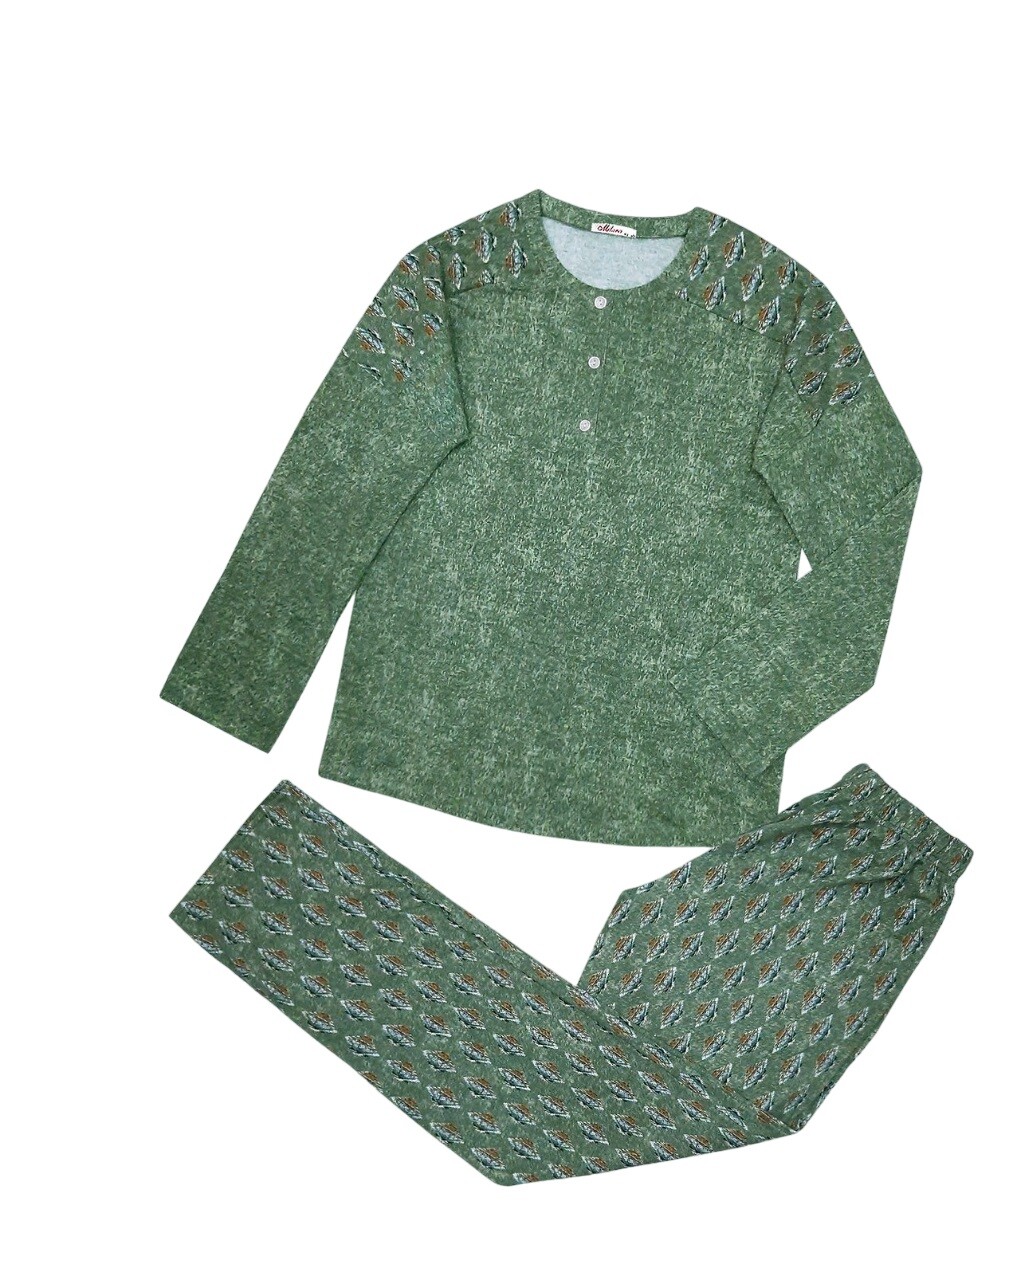 Dámské pyžamo 104/085 zelené se vzorem - Karol M